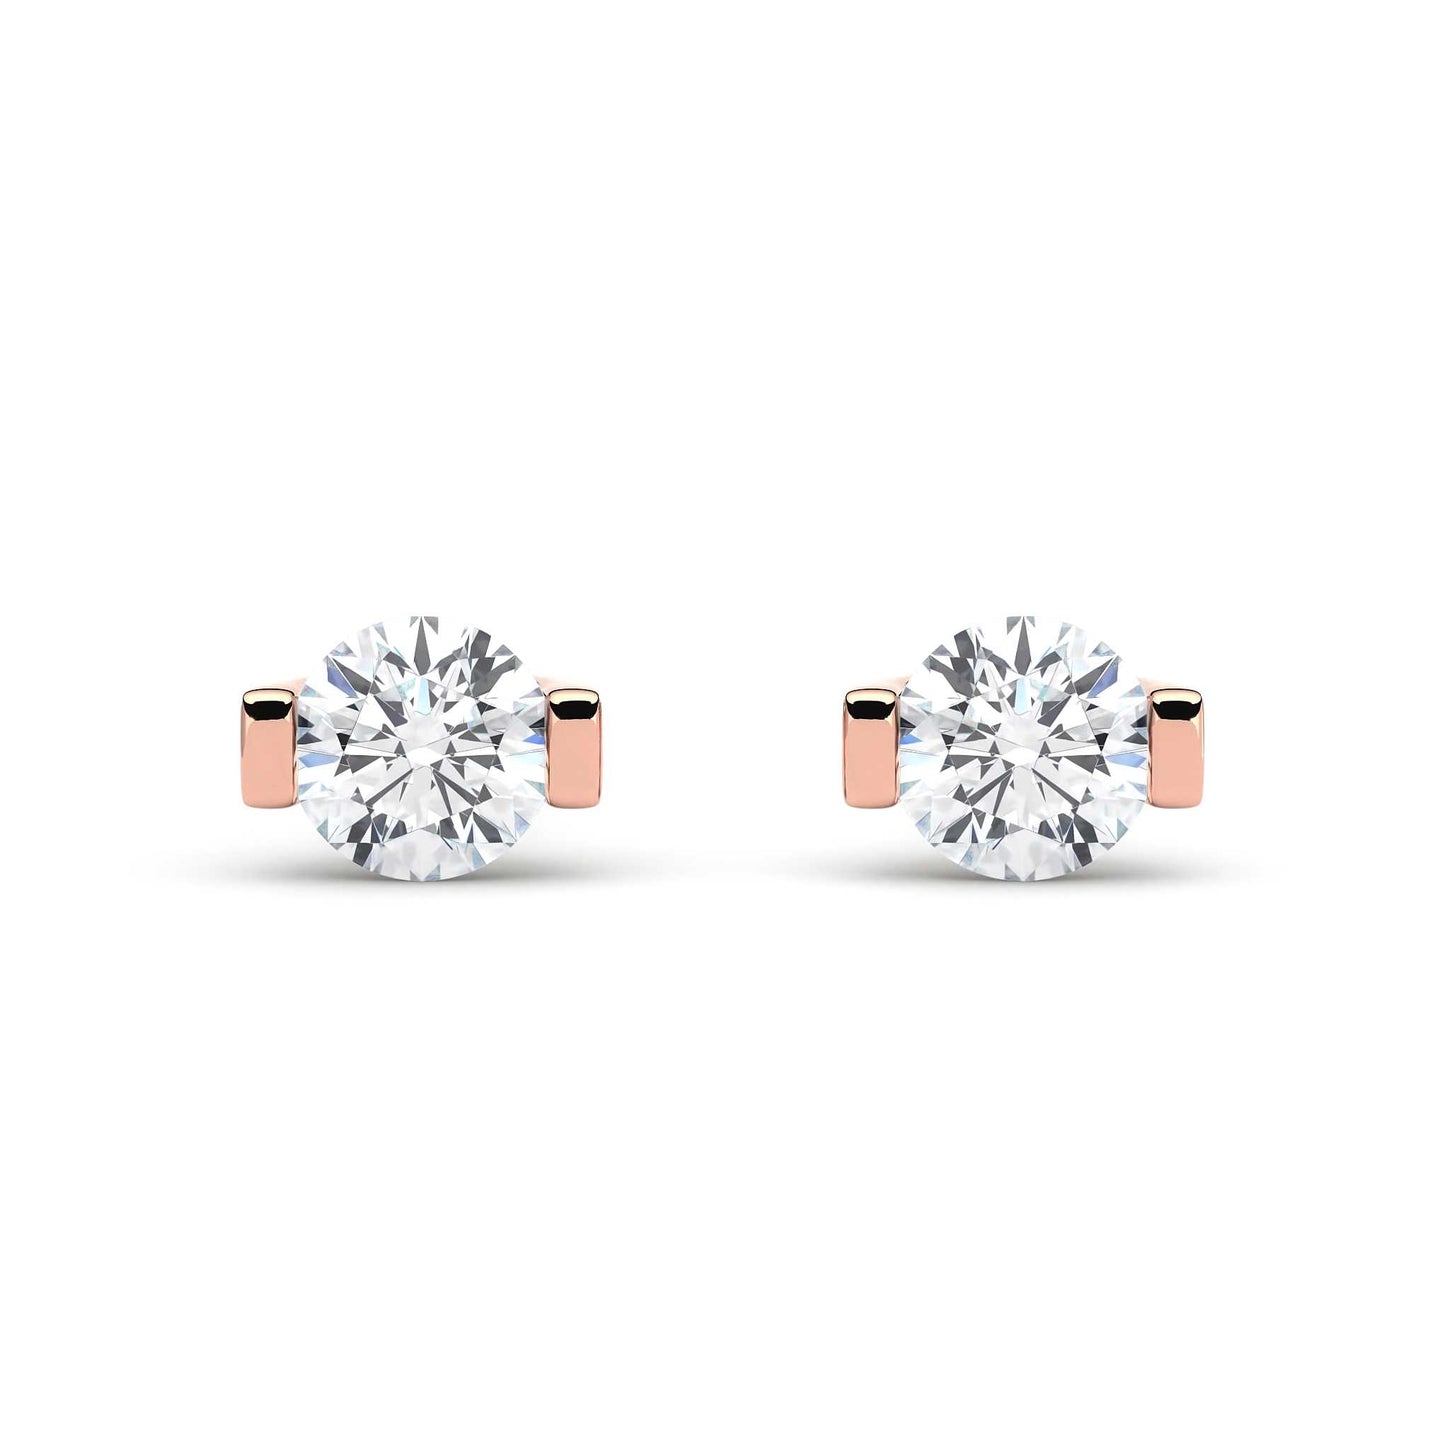 Suokko Timanttikorut -timanttikorvakorut rosakultaa, jossa istutettuna 2 timanttia. Tuotekoodi KE06521